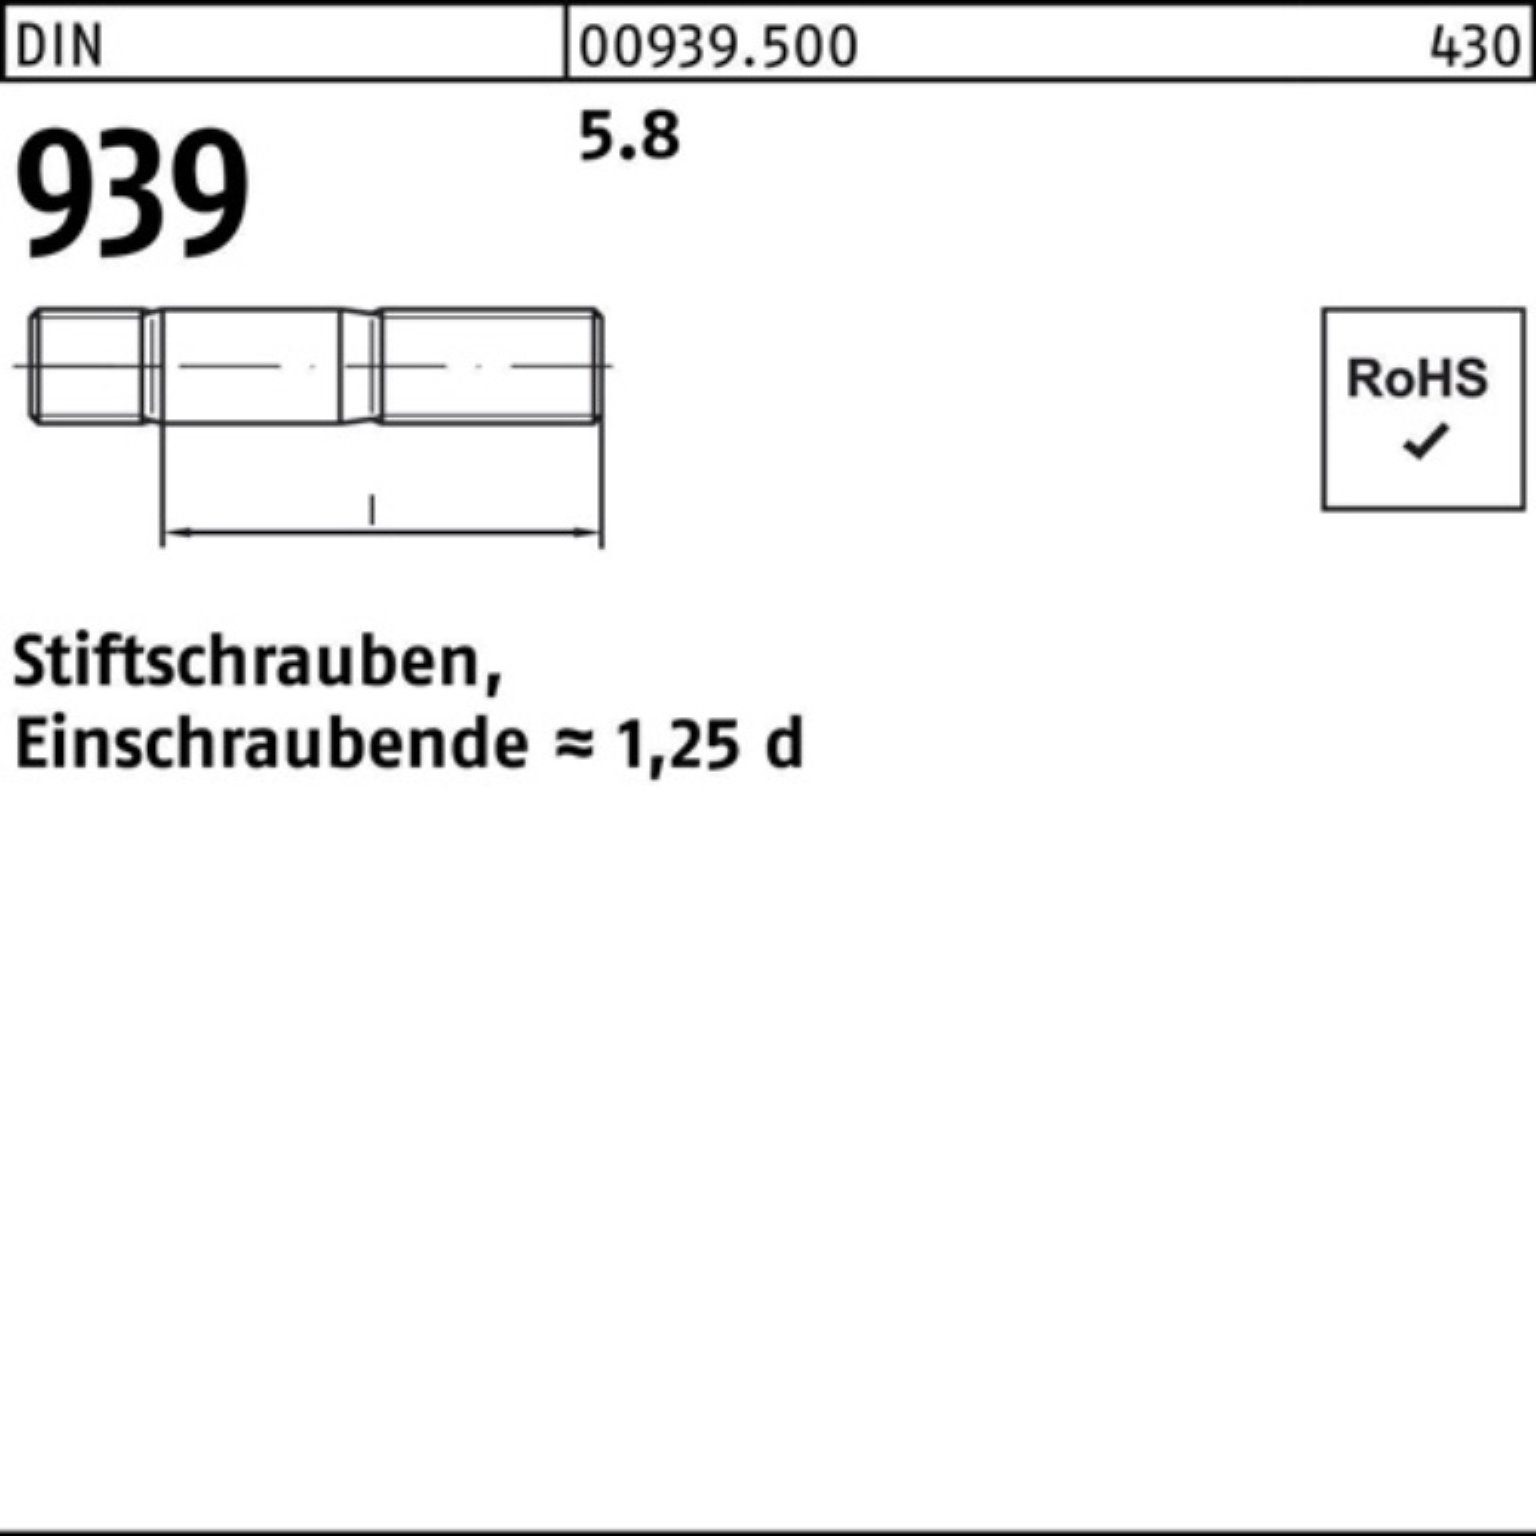 Stiftschraube 90 Stiftschraube DIN Pack M24x Einschraubende=1,25d 100er S Reyher 939 10 5.8